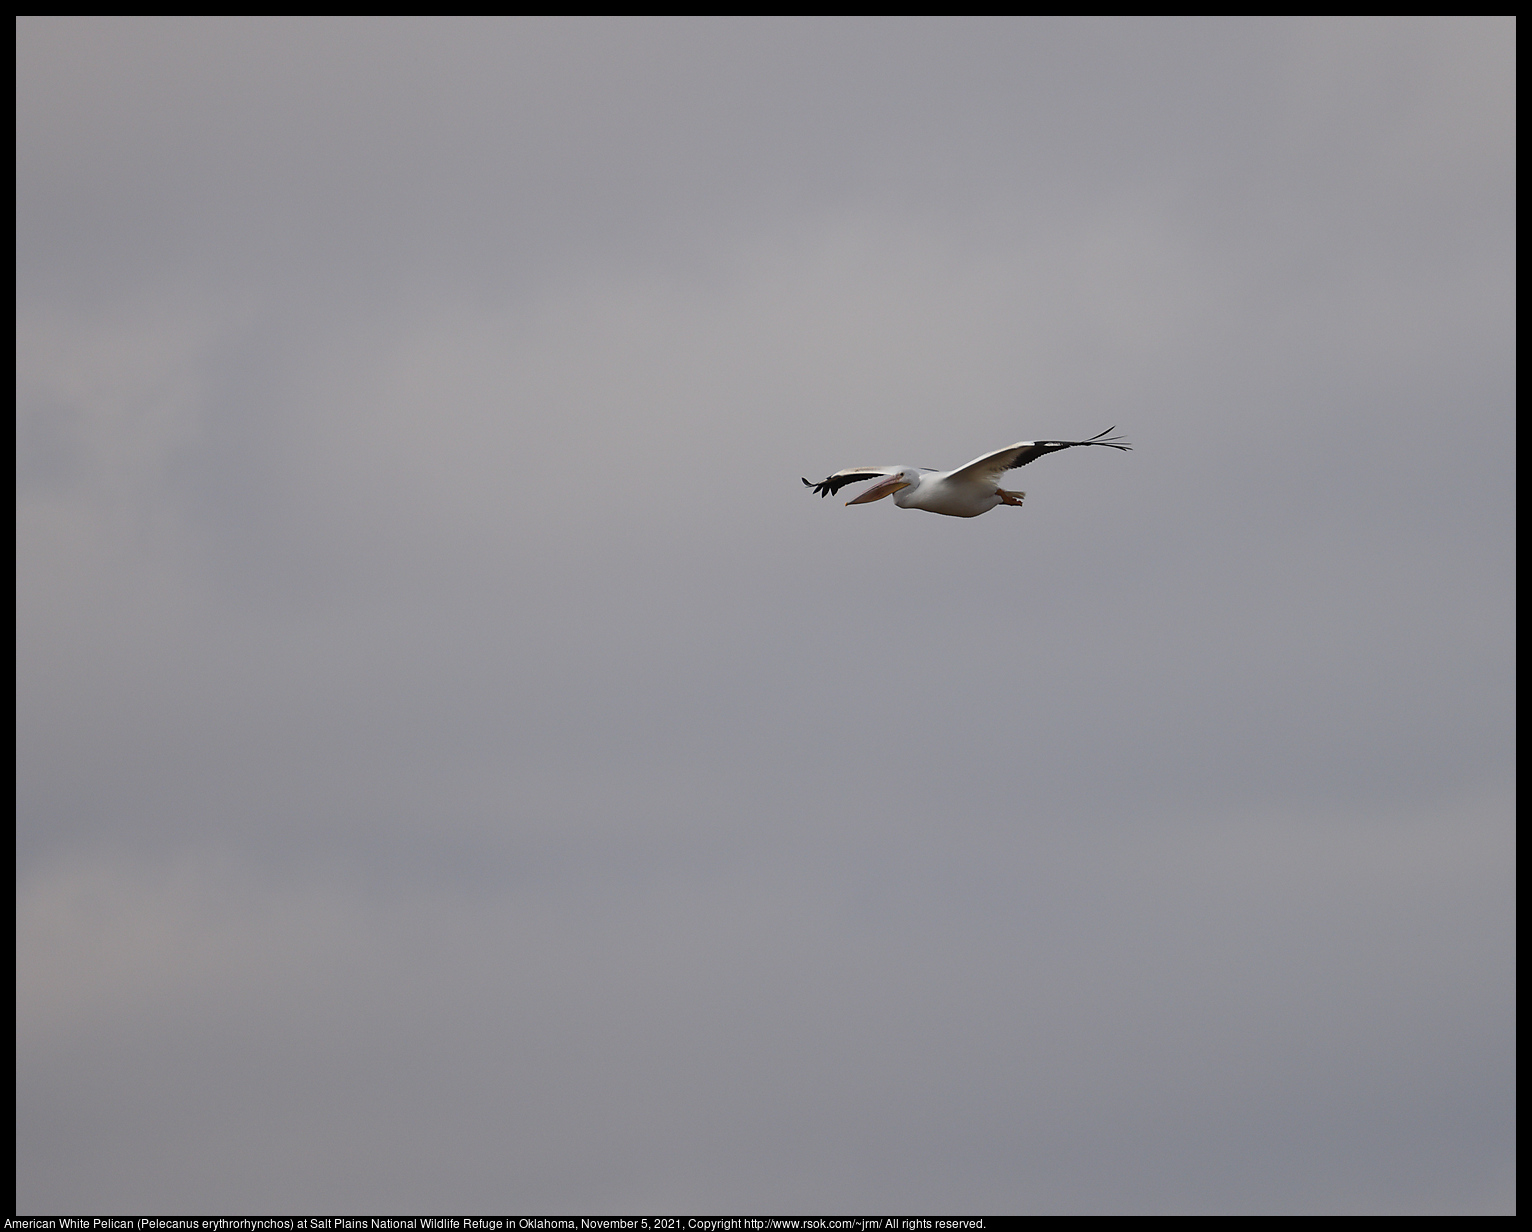 American White Pelican (Pelecanus erythrorhynchos) at Salt Plains National Wildlife Refuge in Oklahoma, November 5, 2021